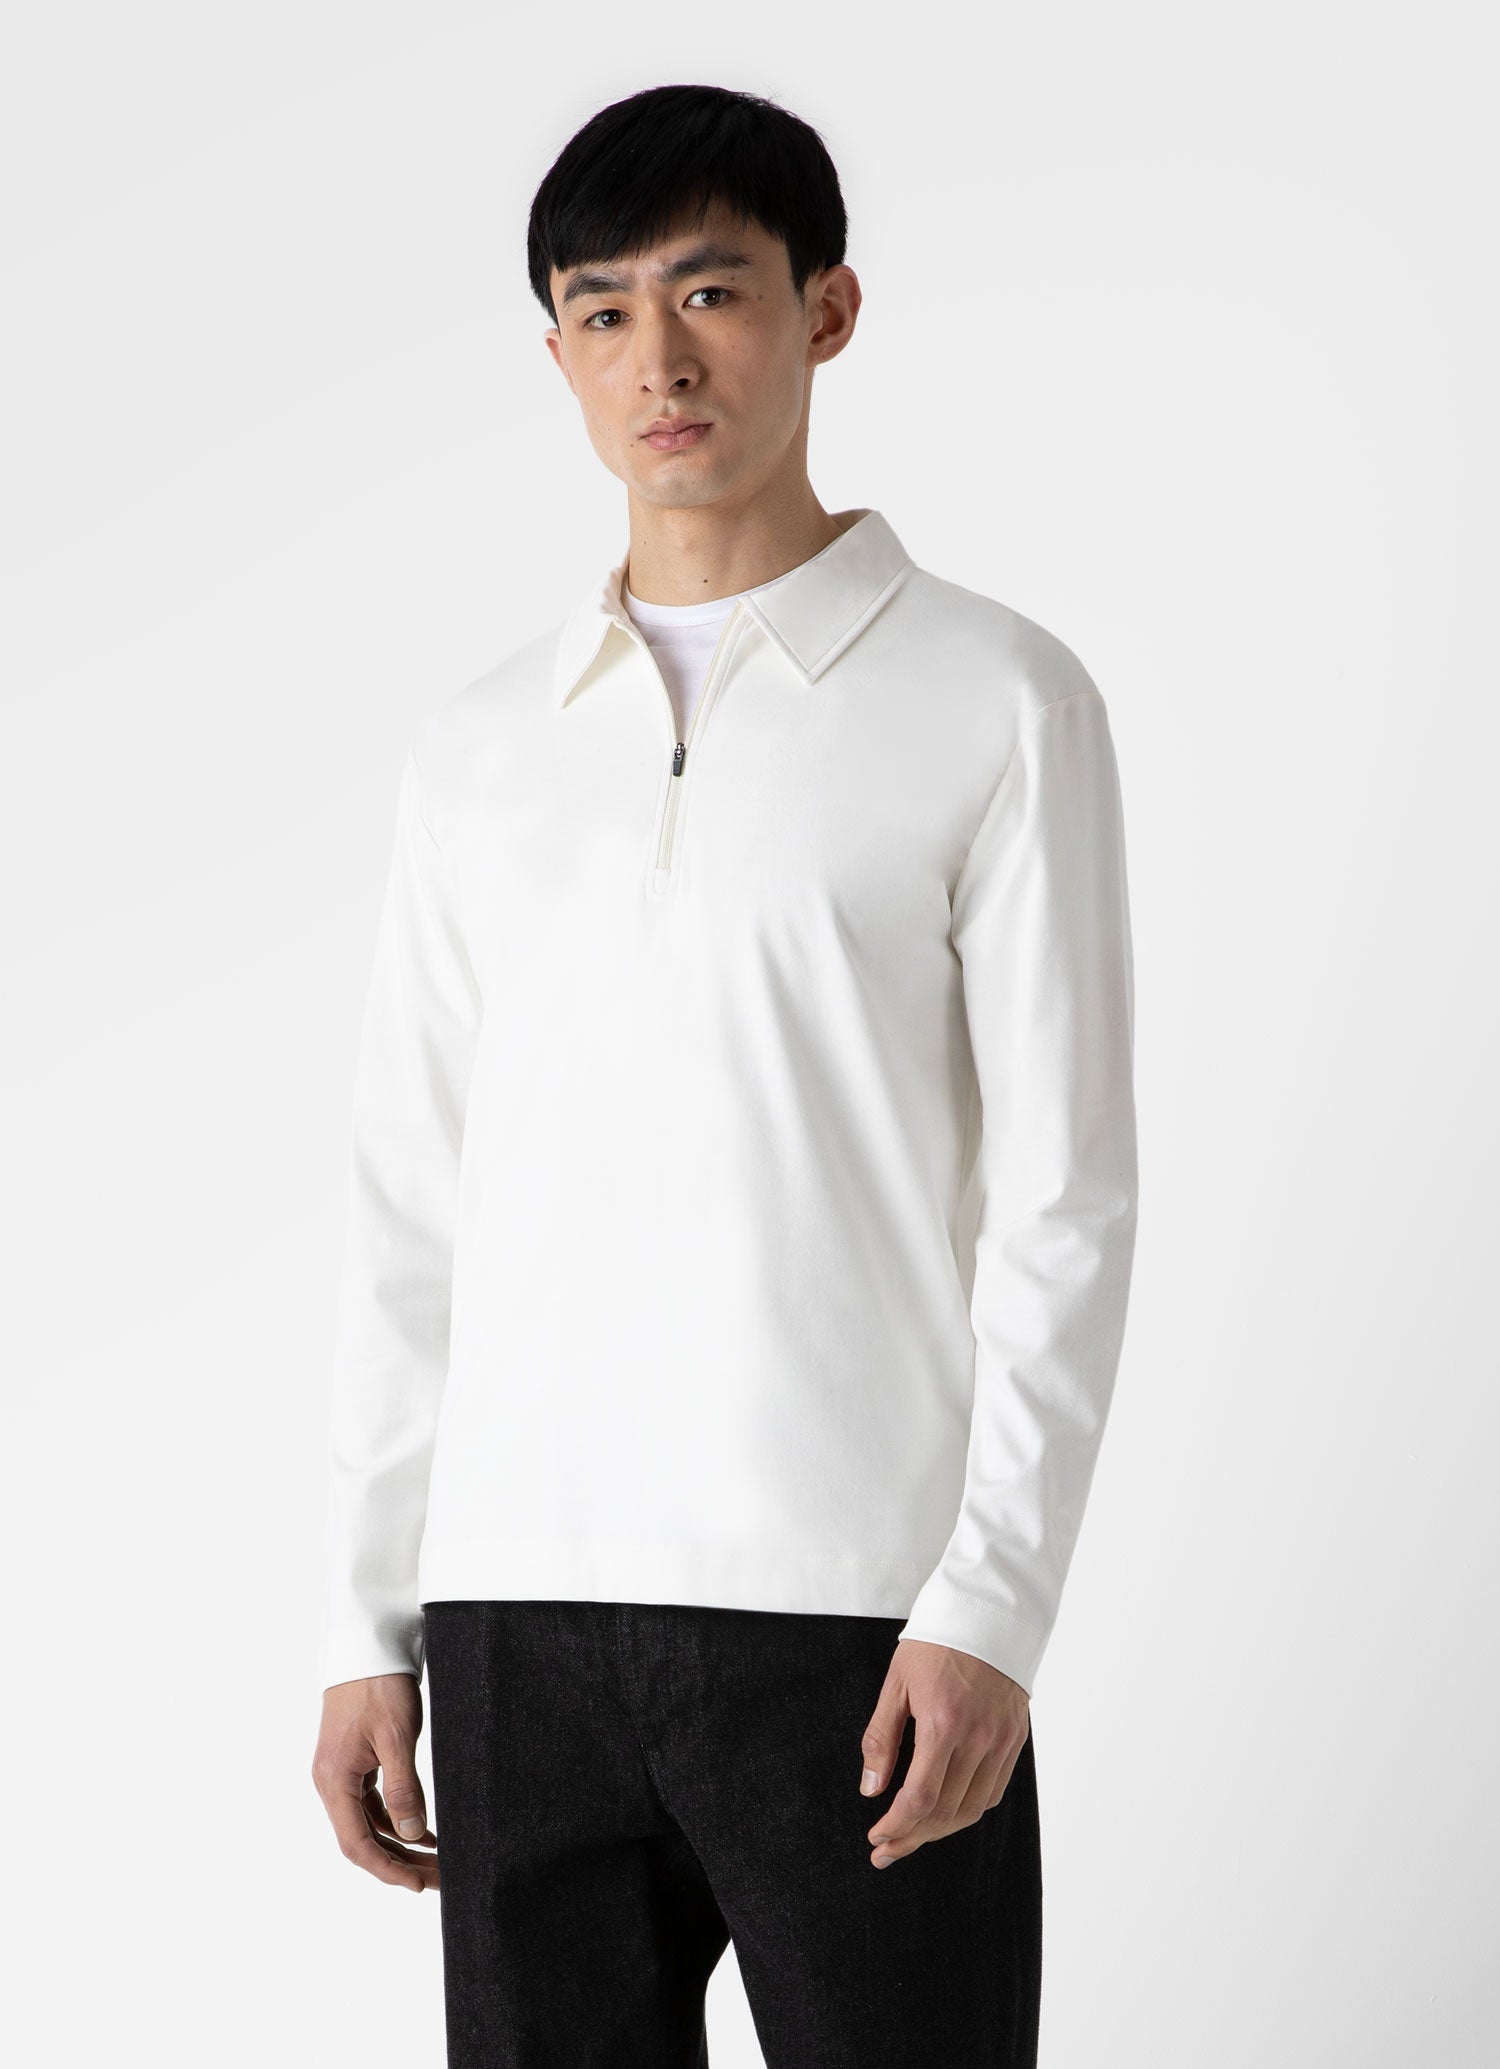 Men's Knit Polo Shirt in Ecru | Sunspel